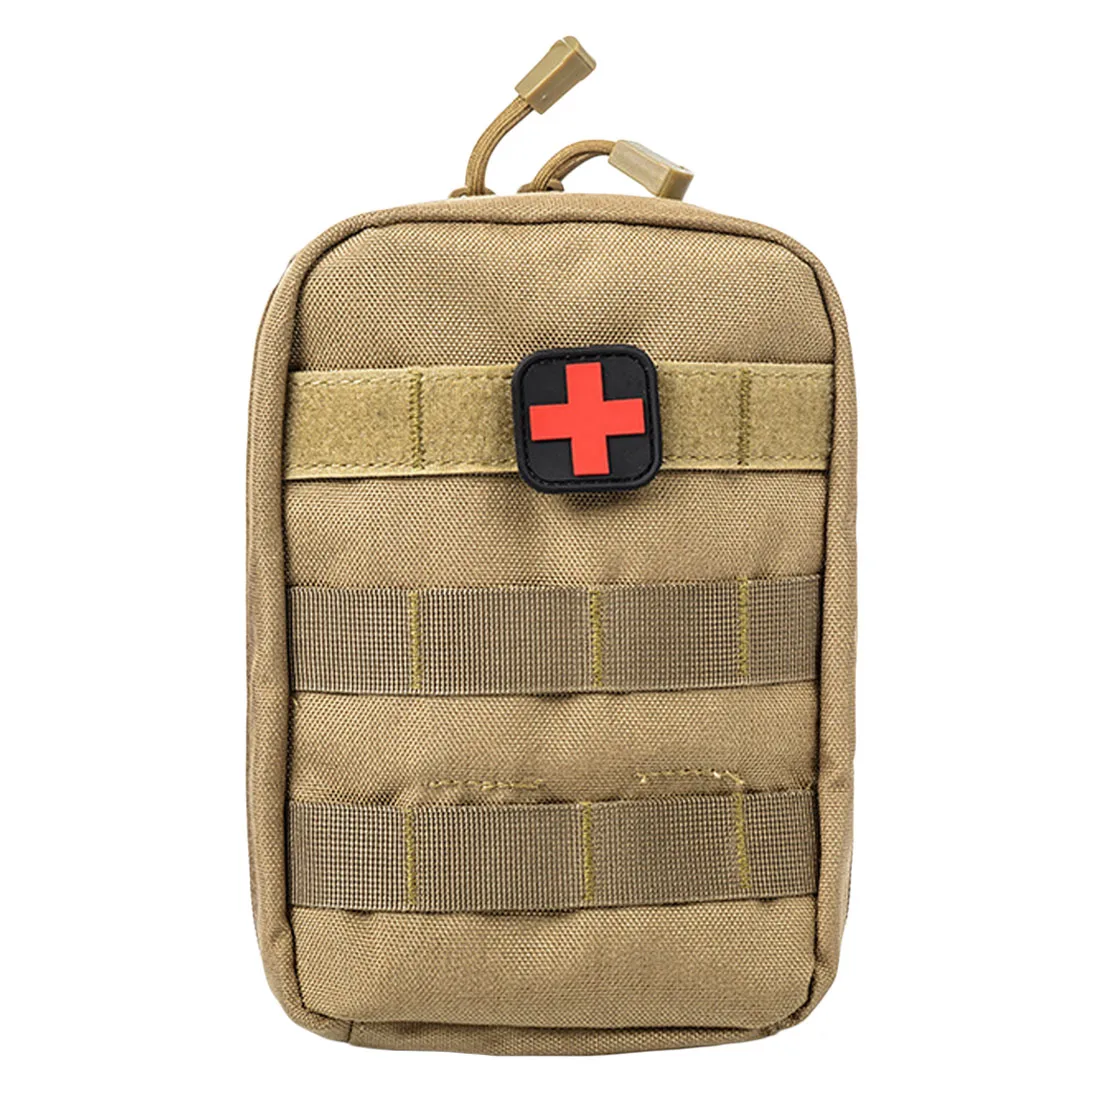 Горячий Открытый походный набор для выживания тактический Медицинский Рюкзак аптечка EMT чехол аварийный военный охотничий универсальный ремень сумка - Цвет: Mud color